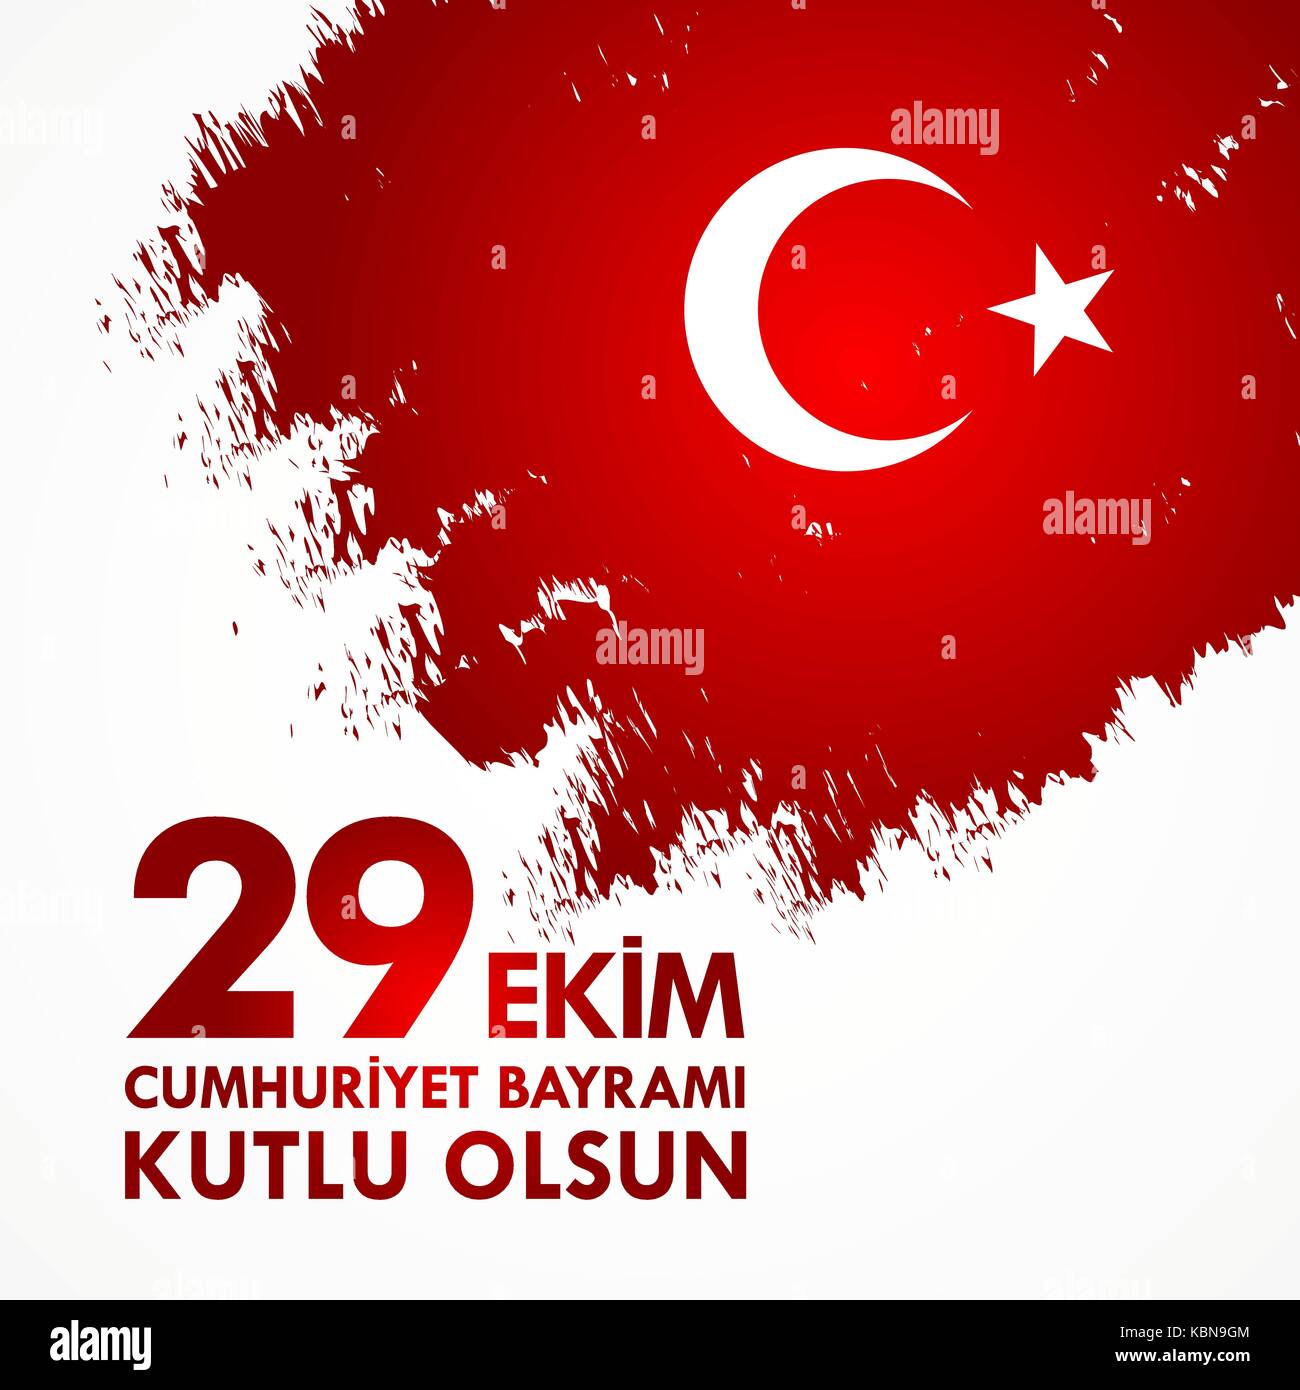 29 ekim cumhuriyet bayraminiz kutlu olsun. Traduzione: 29 ottobre felice il giorno della repubblica turca. Illustrazione Vettoriale